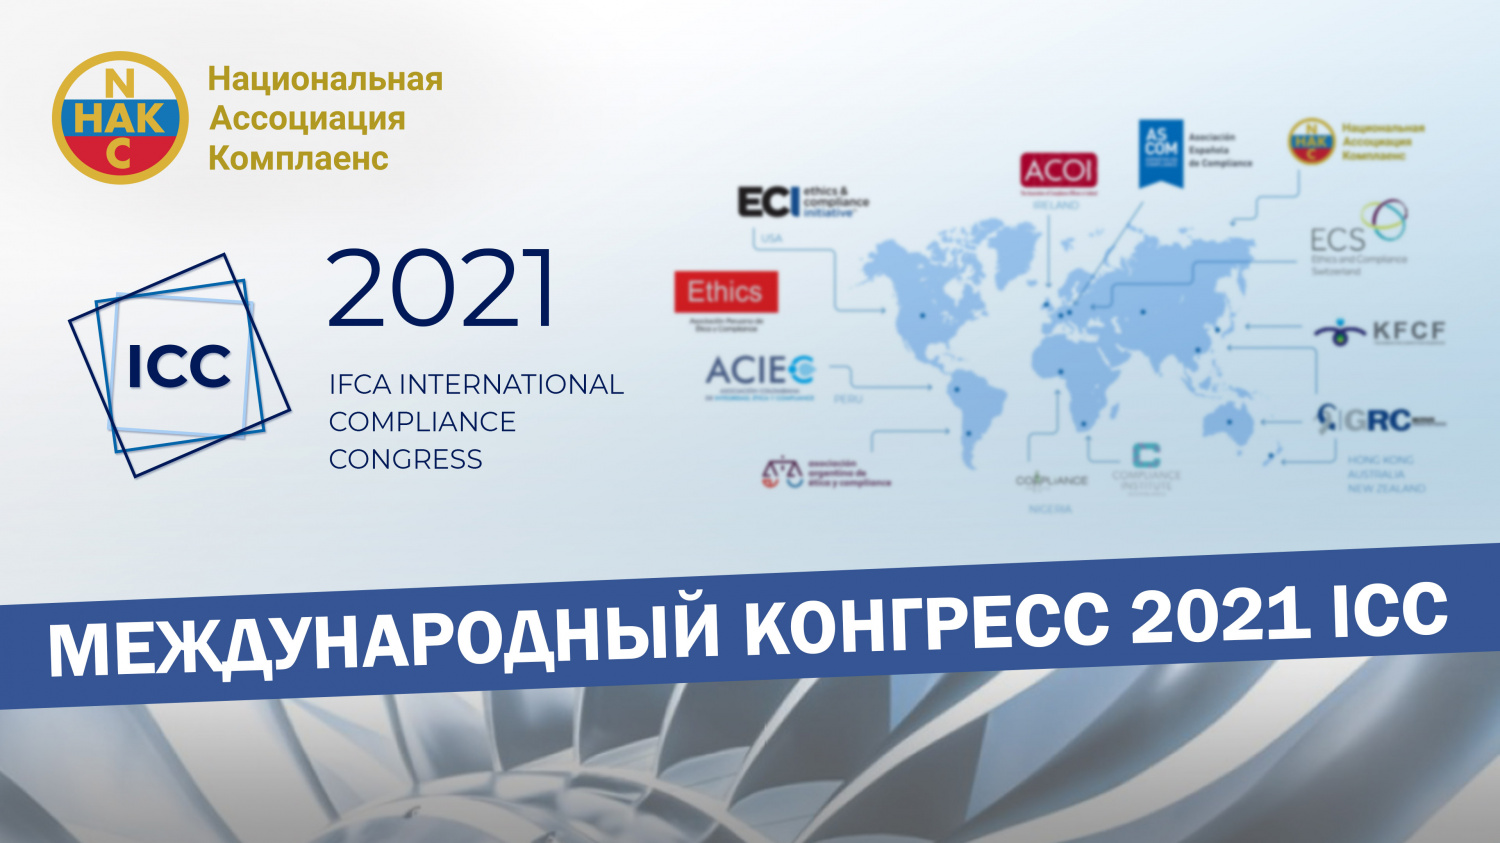 Ведущий международного конгресса IFCA 2021 Джереми Магс о предстоящем мероприятии